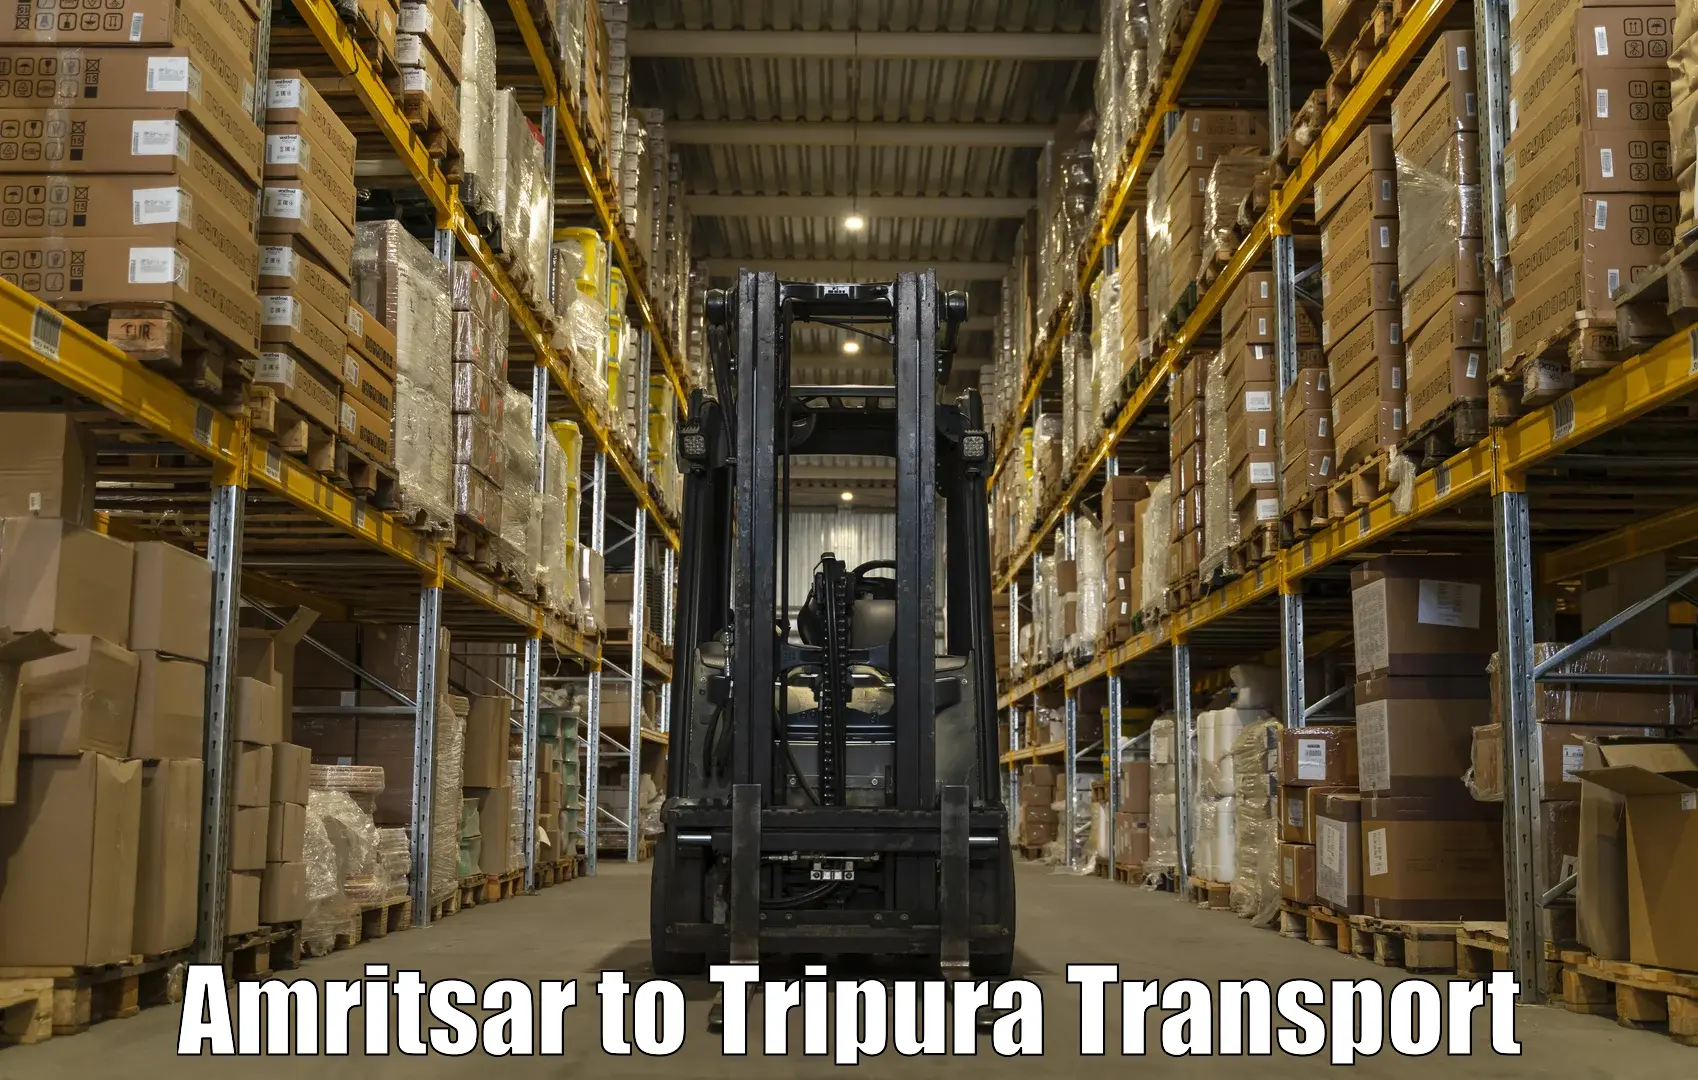 Road transport online services Amritsar to Santirbazar